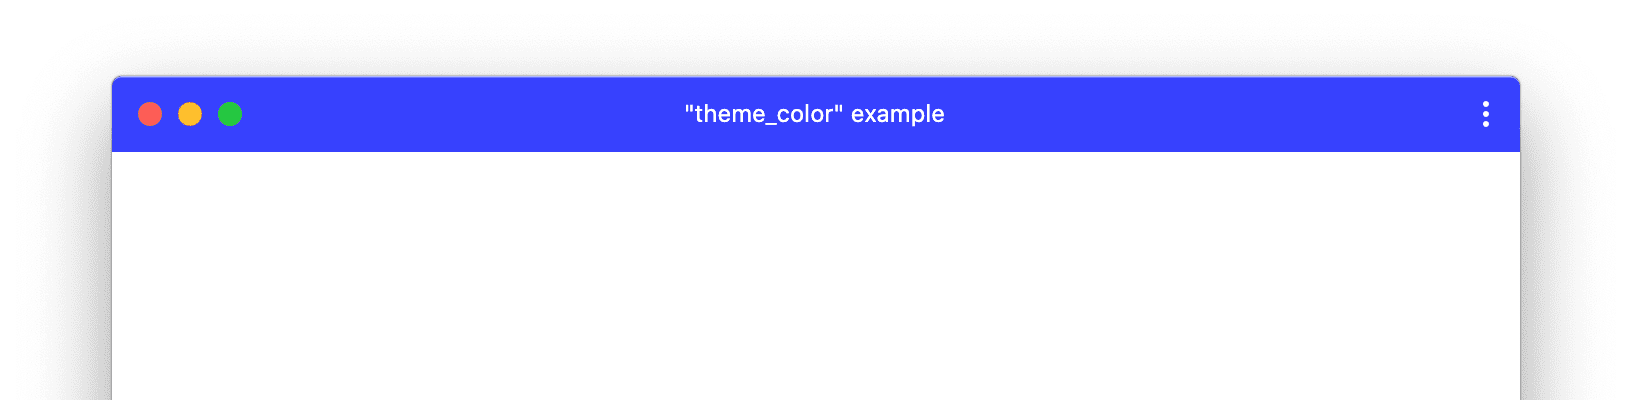 カスタムの theme_color が設定されている PWA ウィンドウの例。